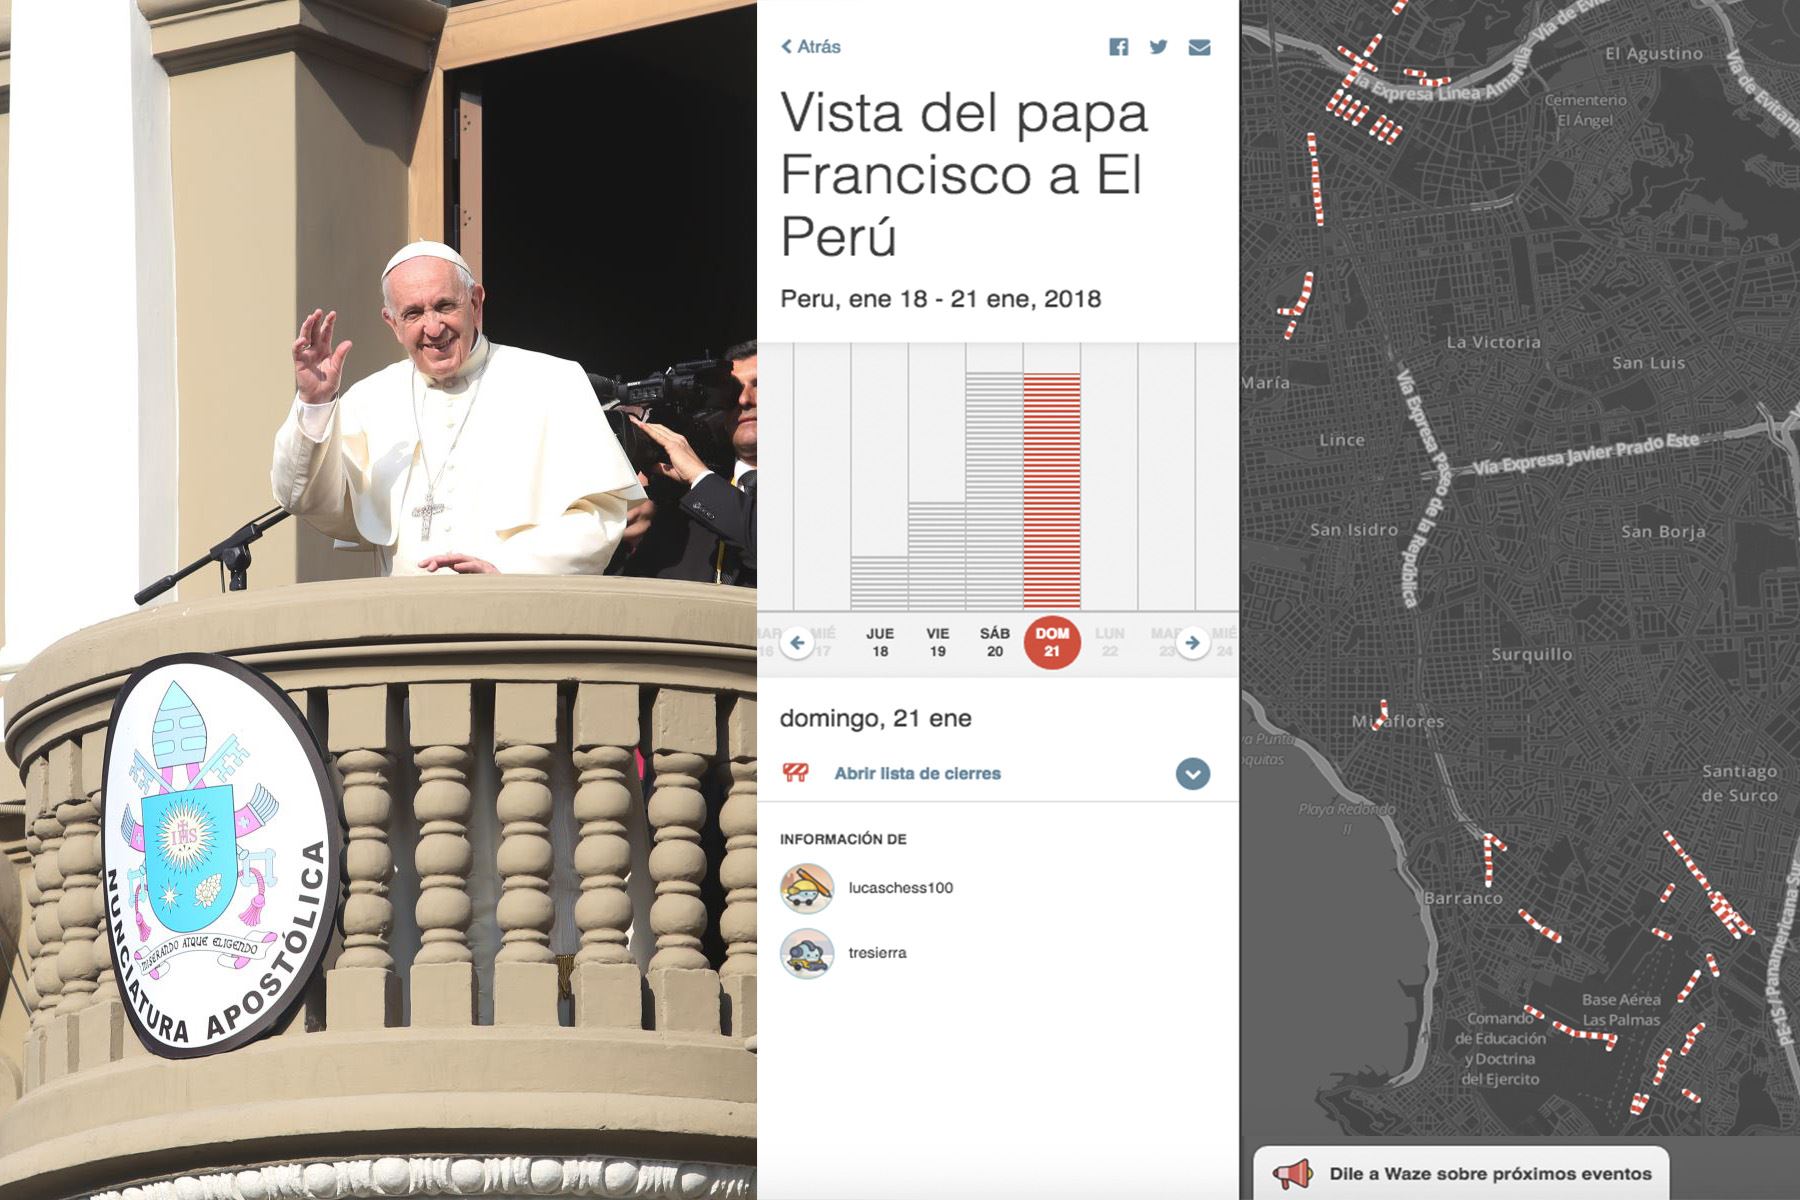 Aplicación Waze brinda recomendaciones para llegar a la misa en Las Palmas